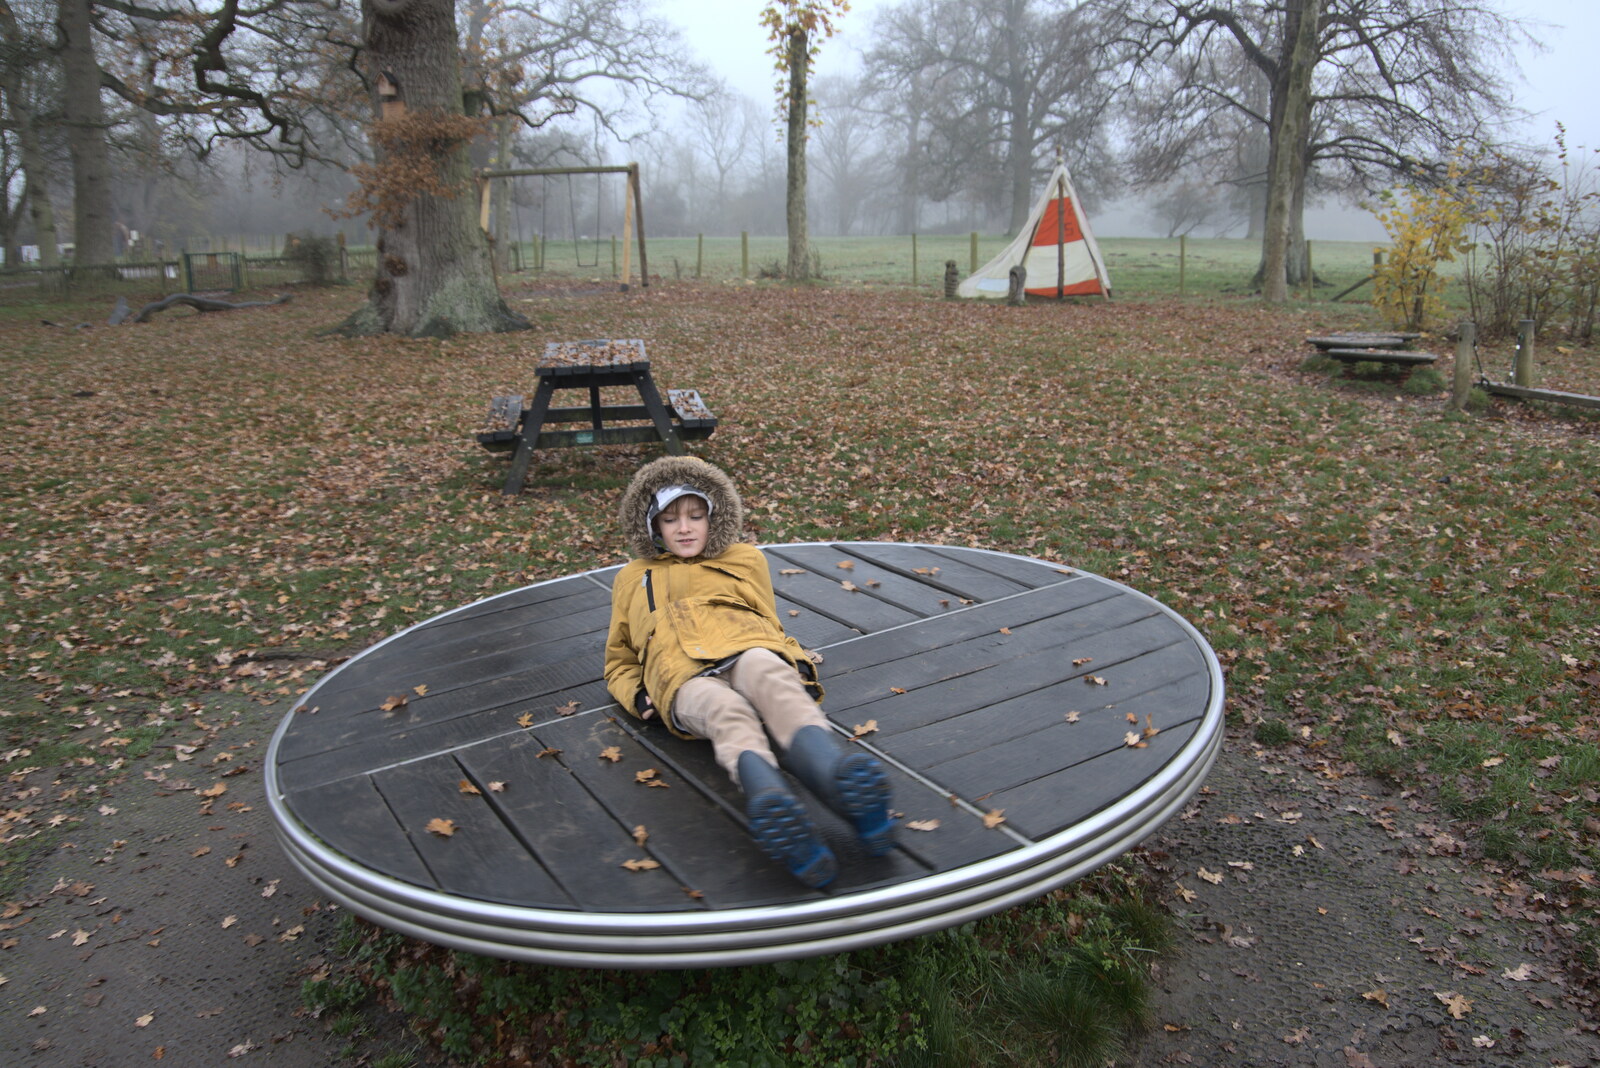 Harry has a spin around in the playground from A Return to Thornham Walks, Thornham, Suffolk - 19th December 2021